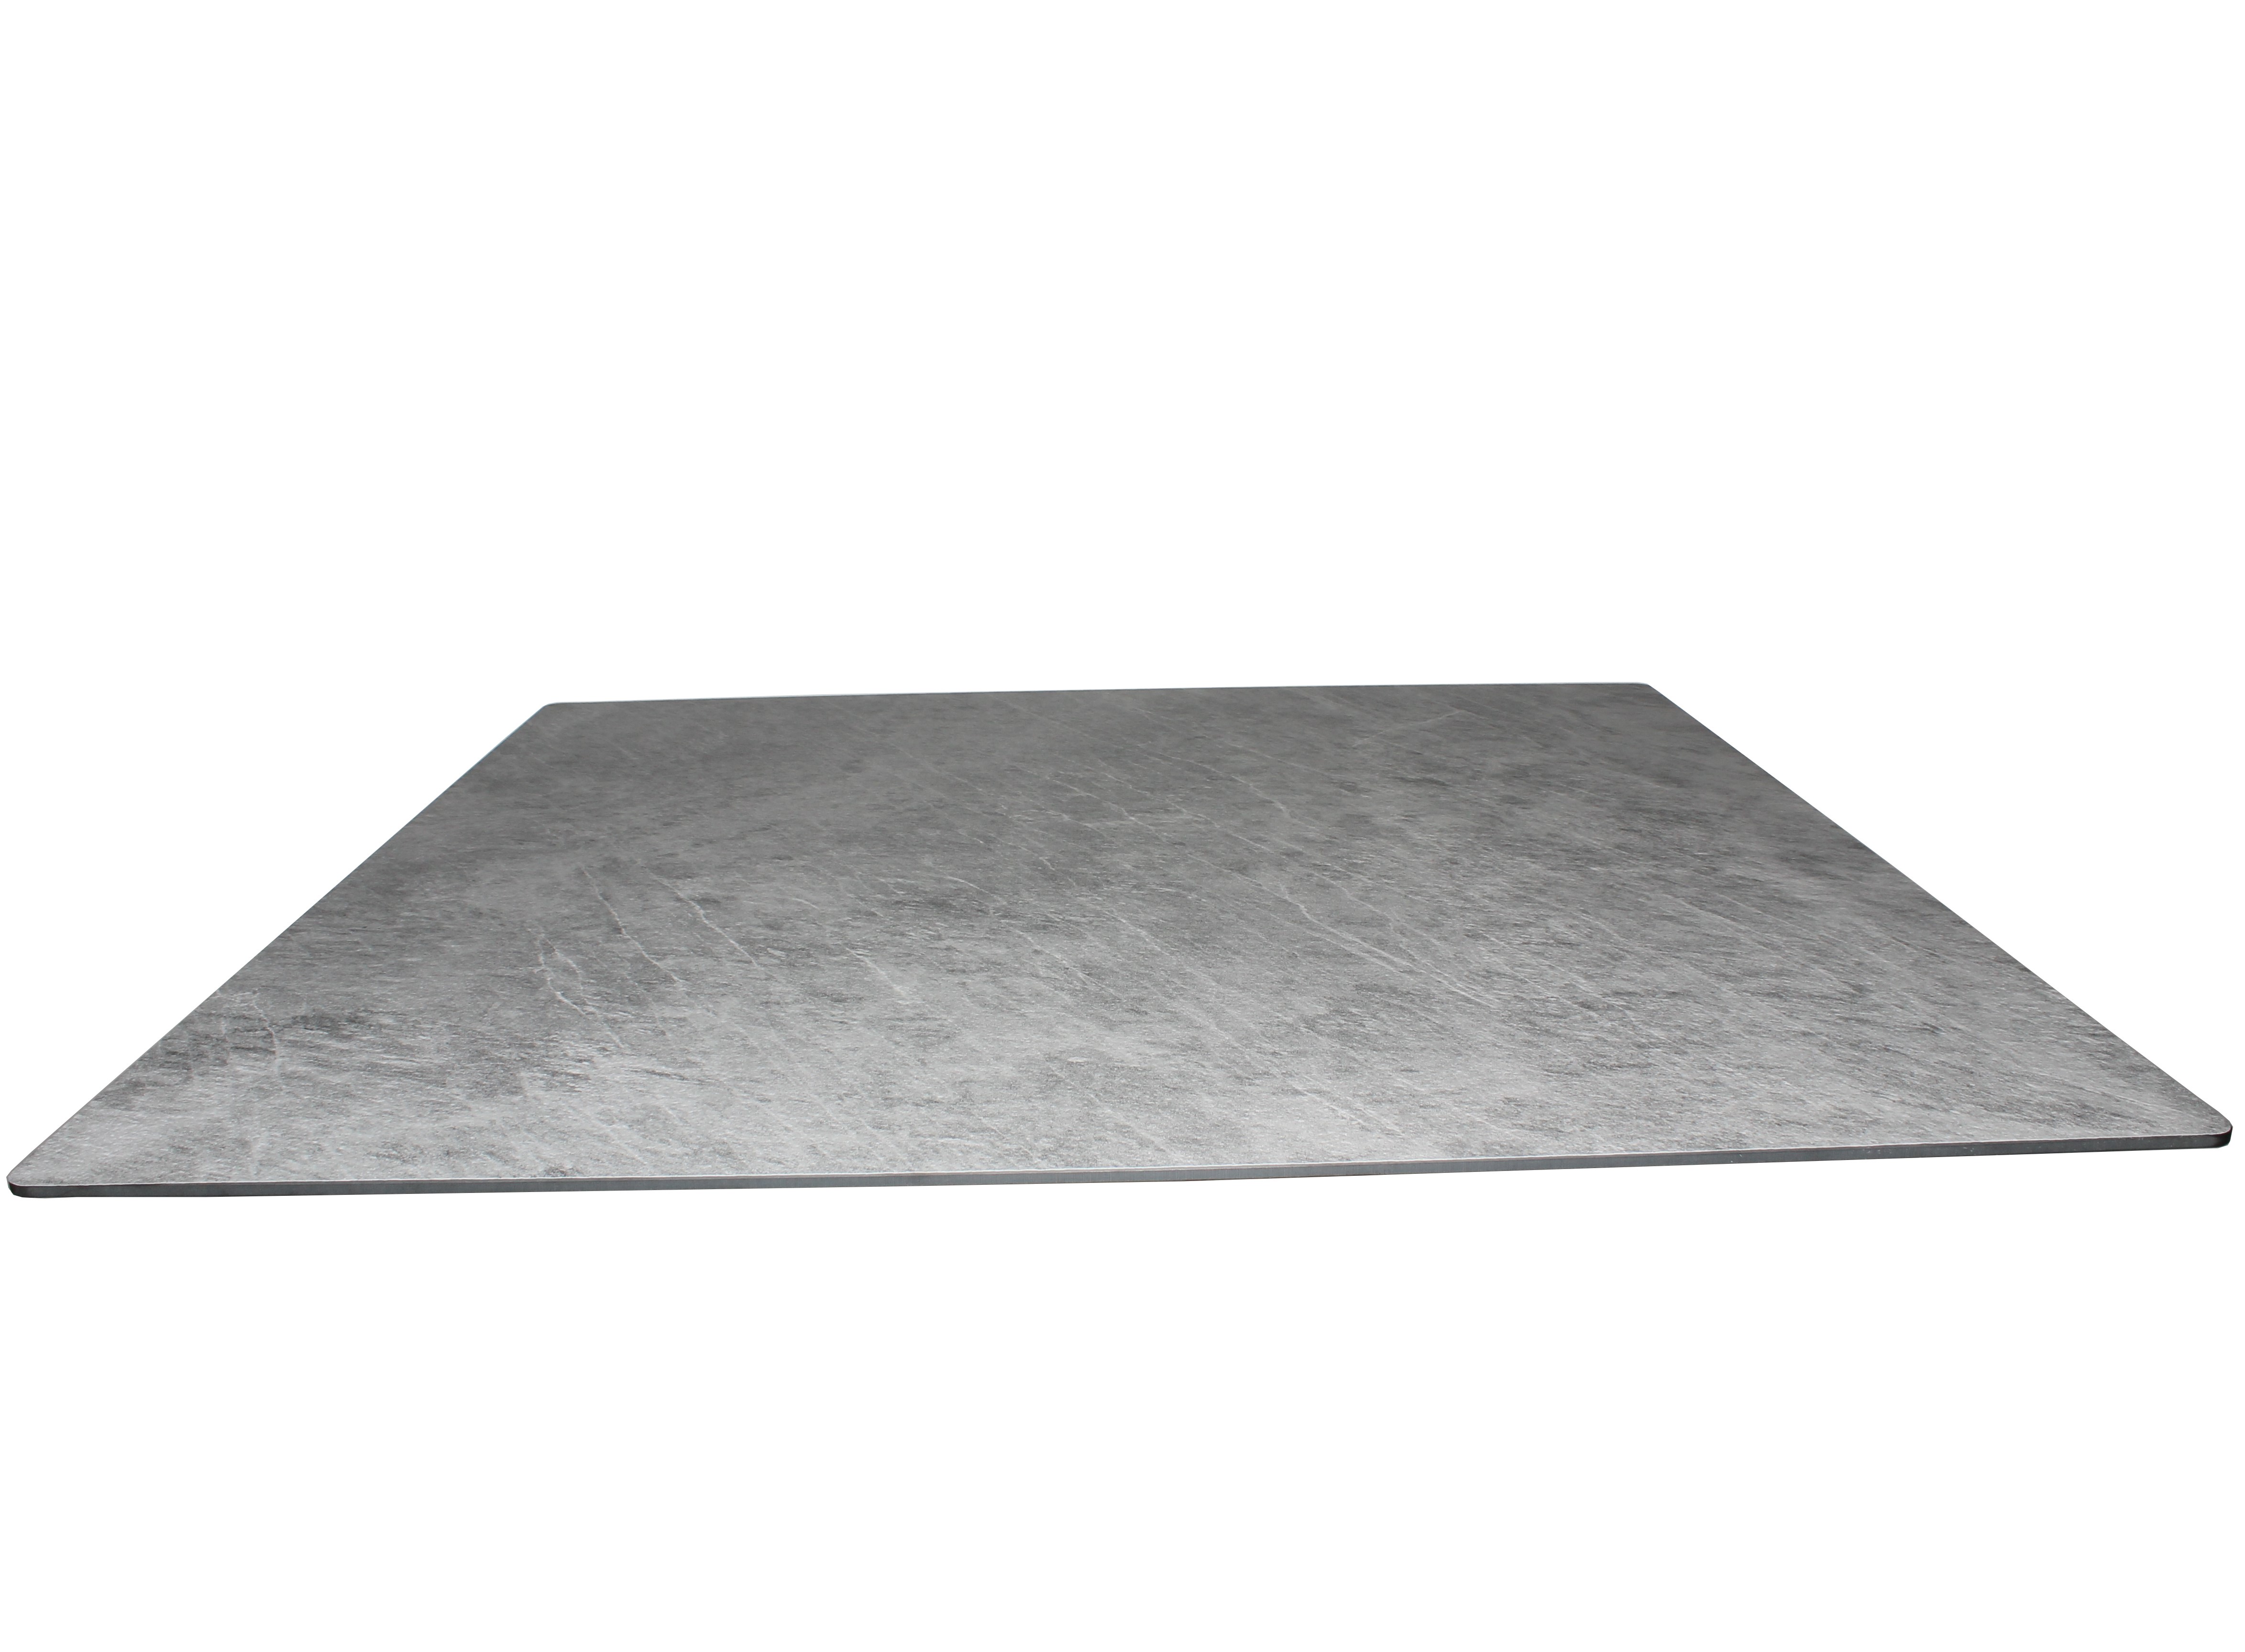 Tisch VISION mit einer HPL-Kompakt-Tischplatte - Industrial-Design Marmor hell, 69 x 69 cm